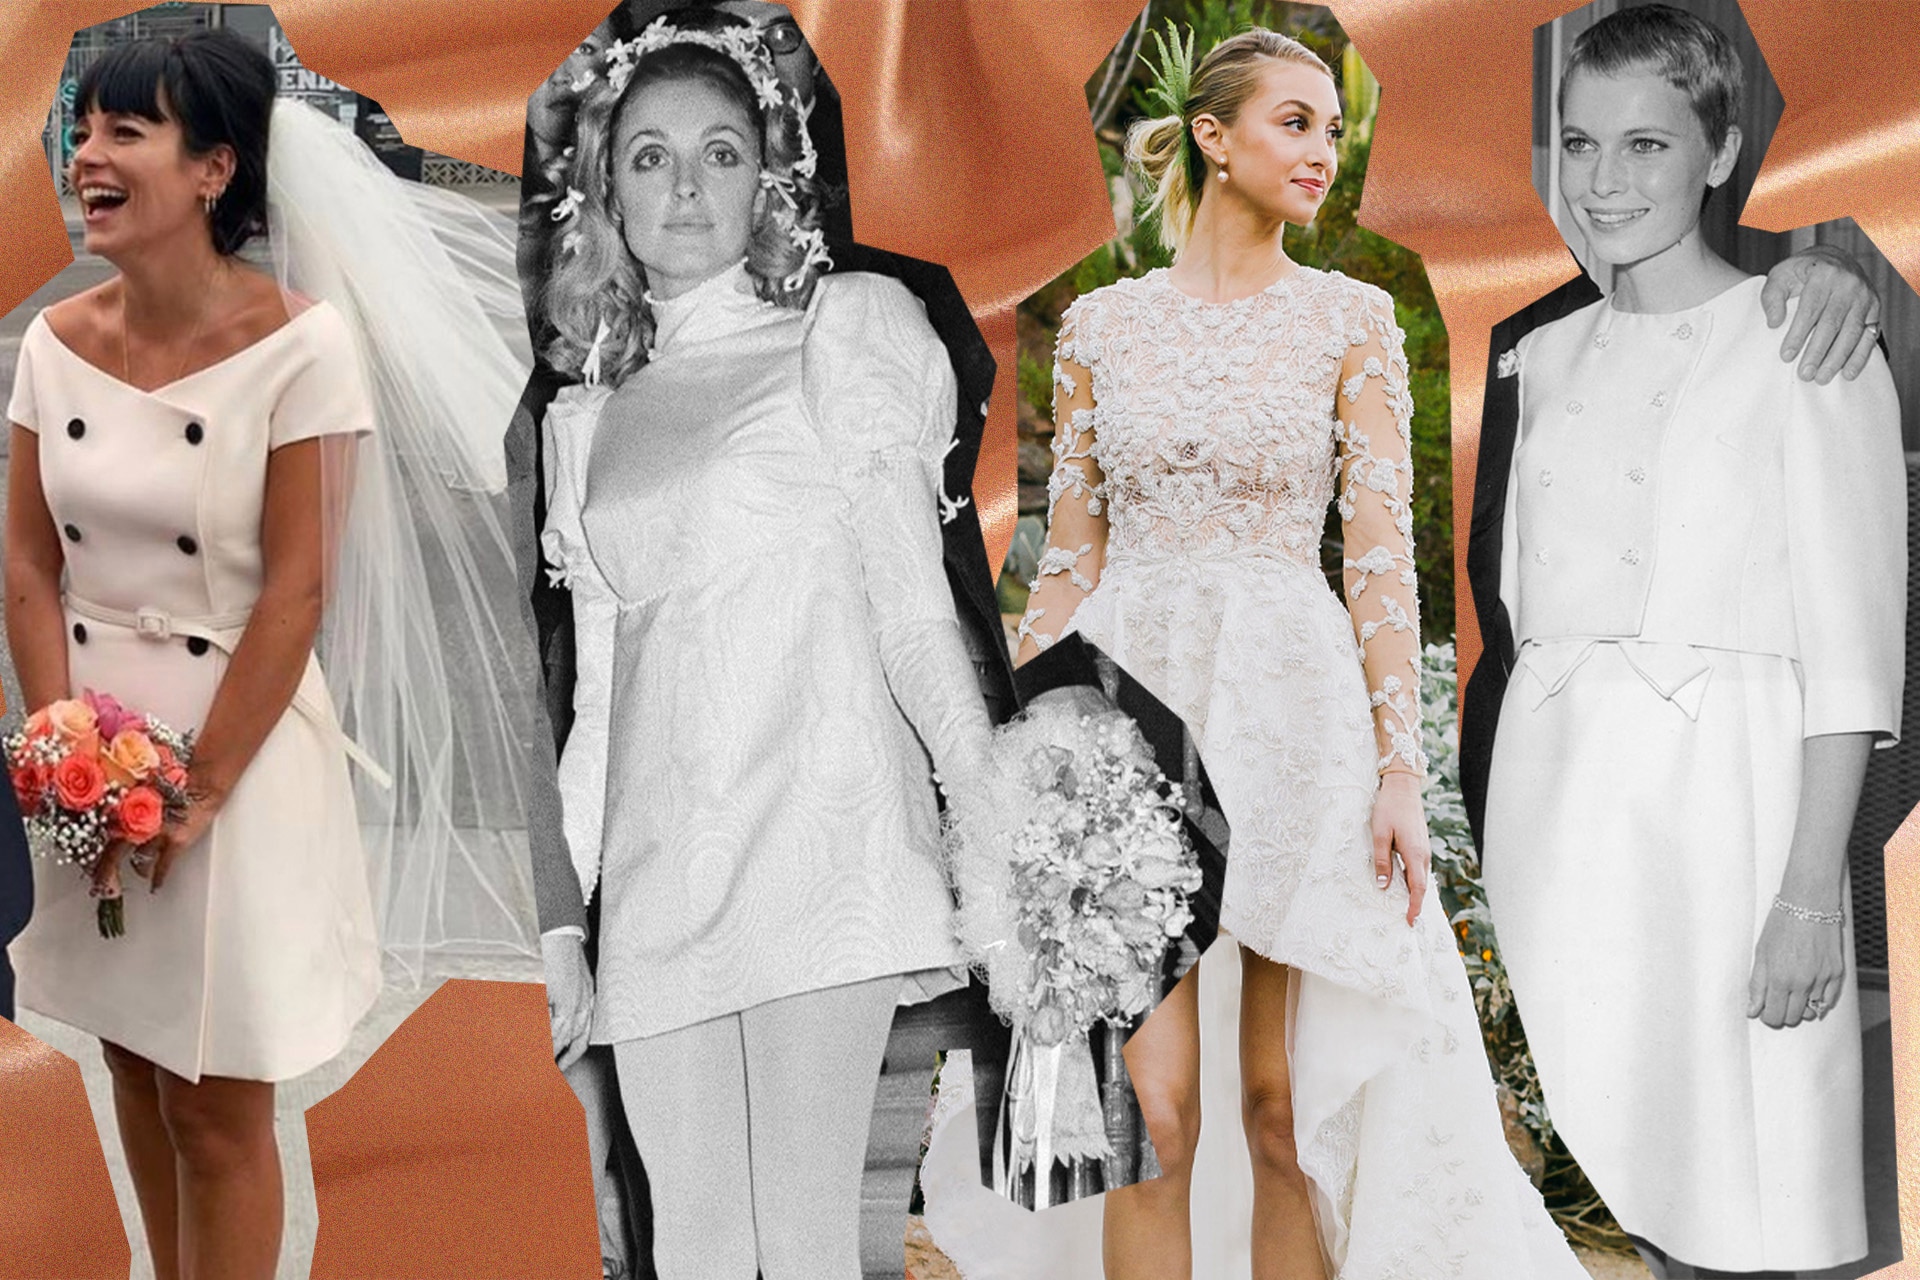 13 celebrity brides who opted for short wedding dresses - Vogue